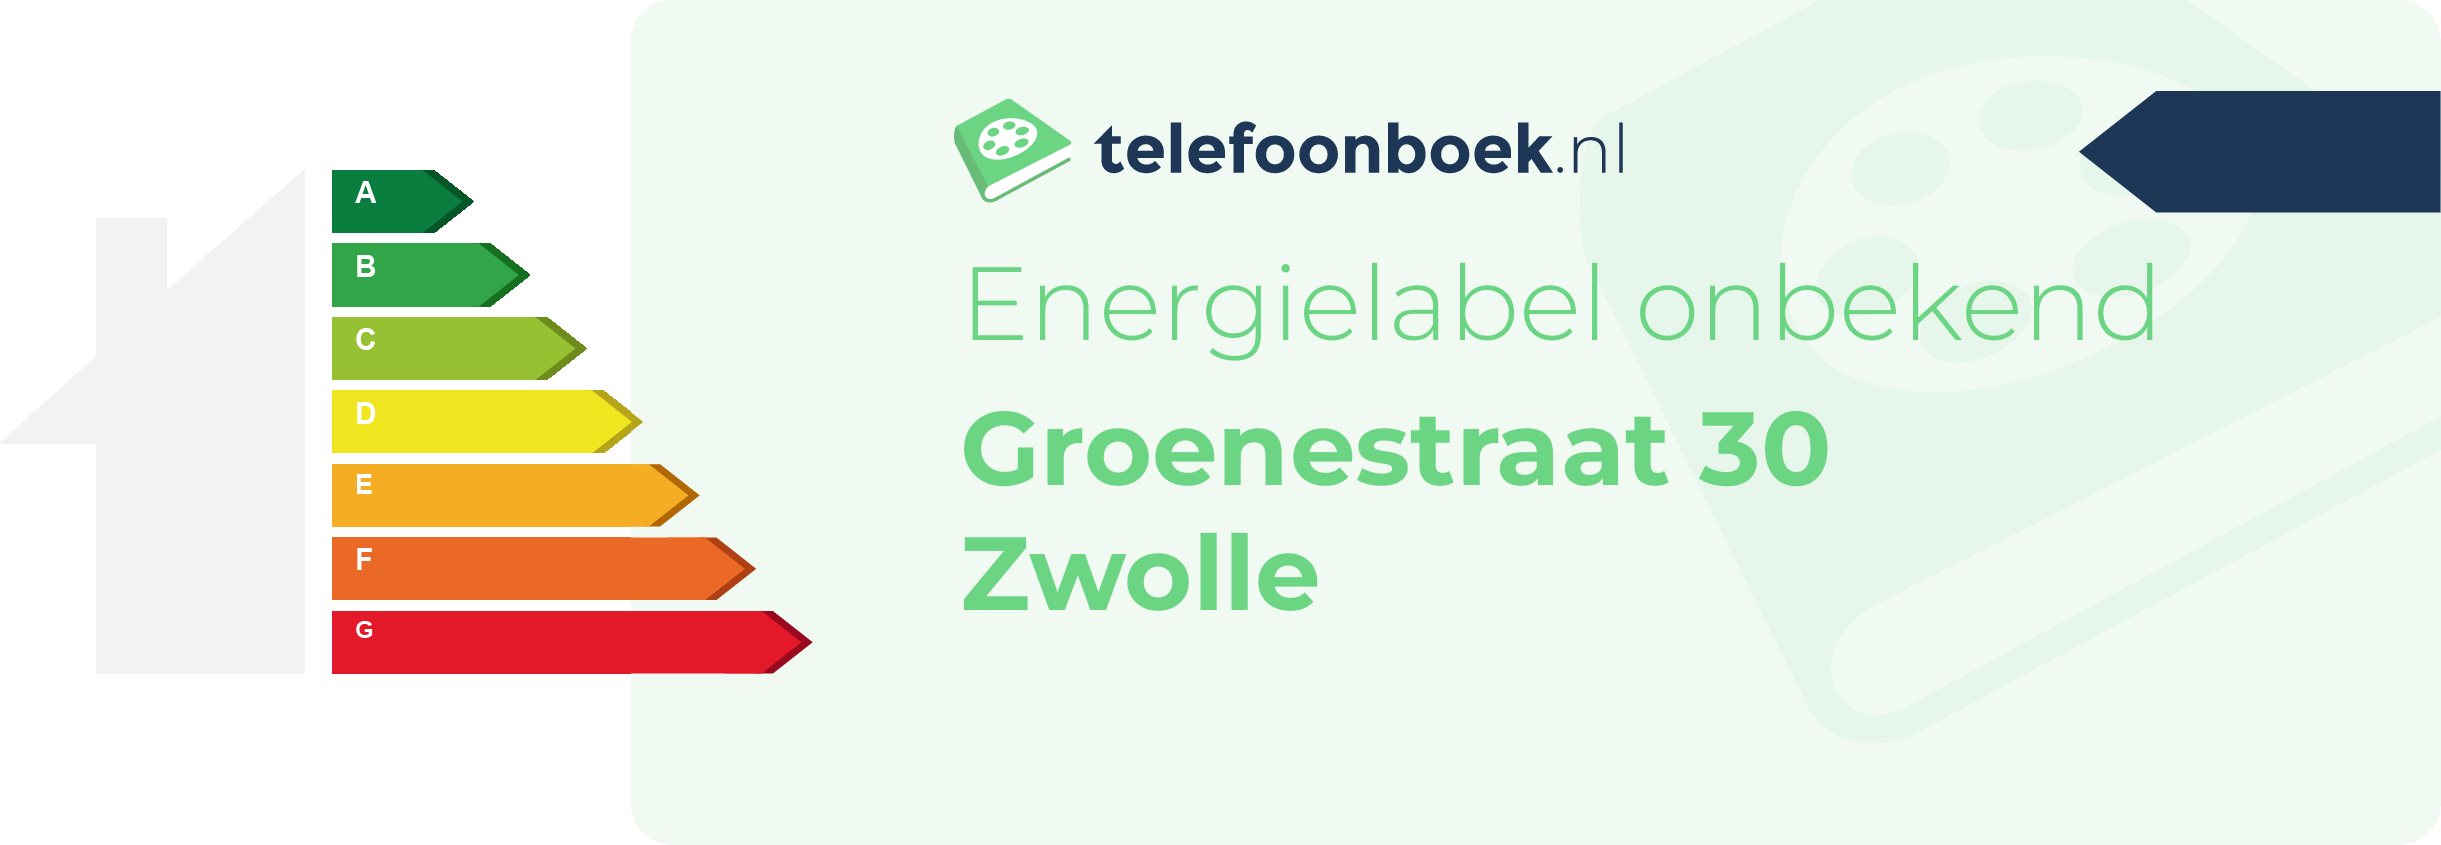 Energielabel Groenestraat 30 Zwolle